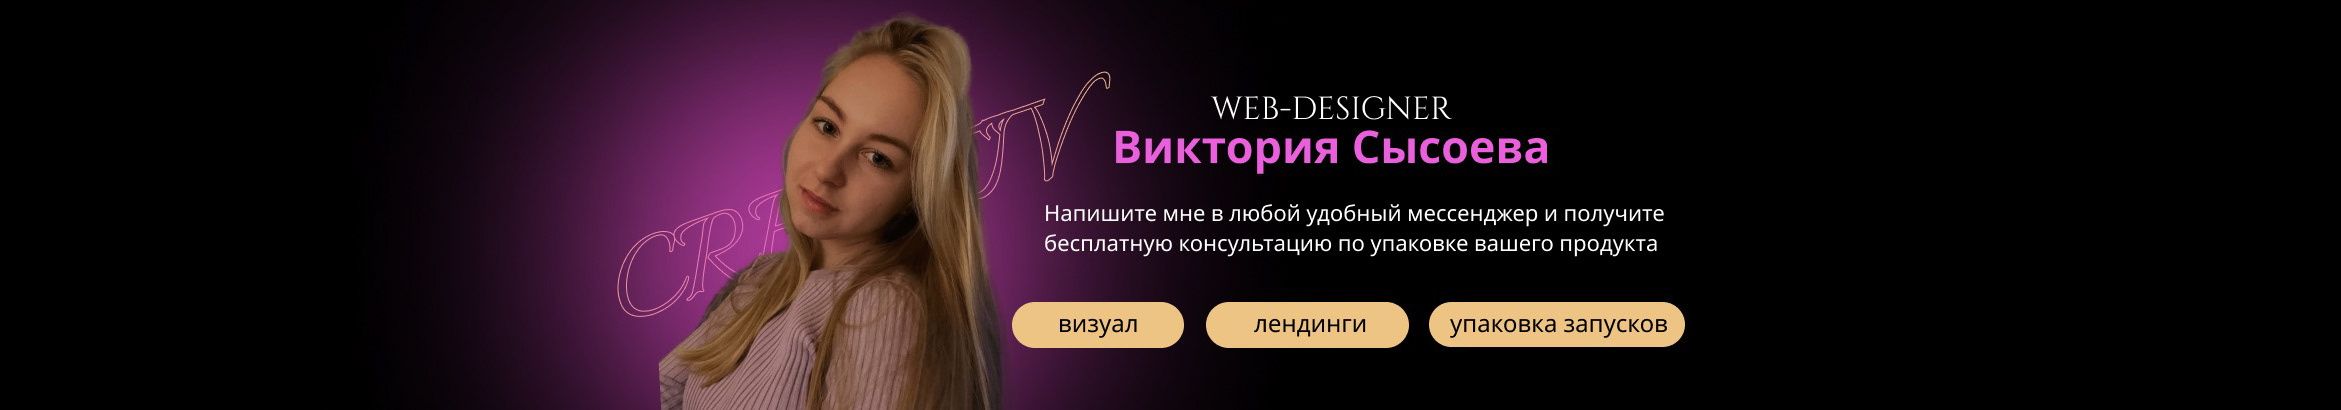 Banner de perfil de Viktoria Sysoeva